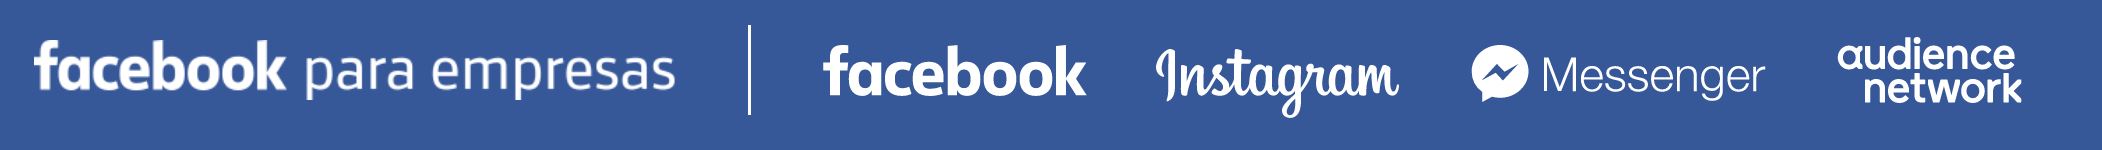 facebook empresas